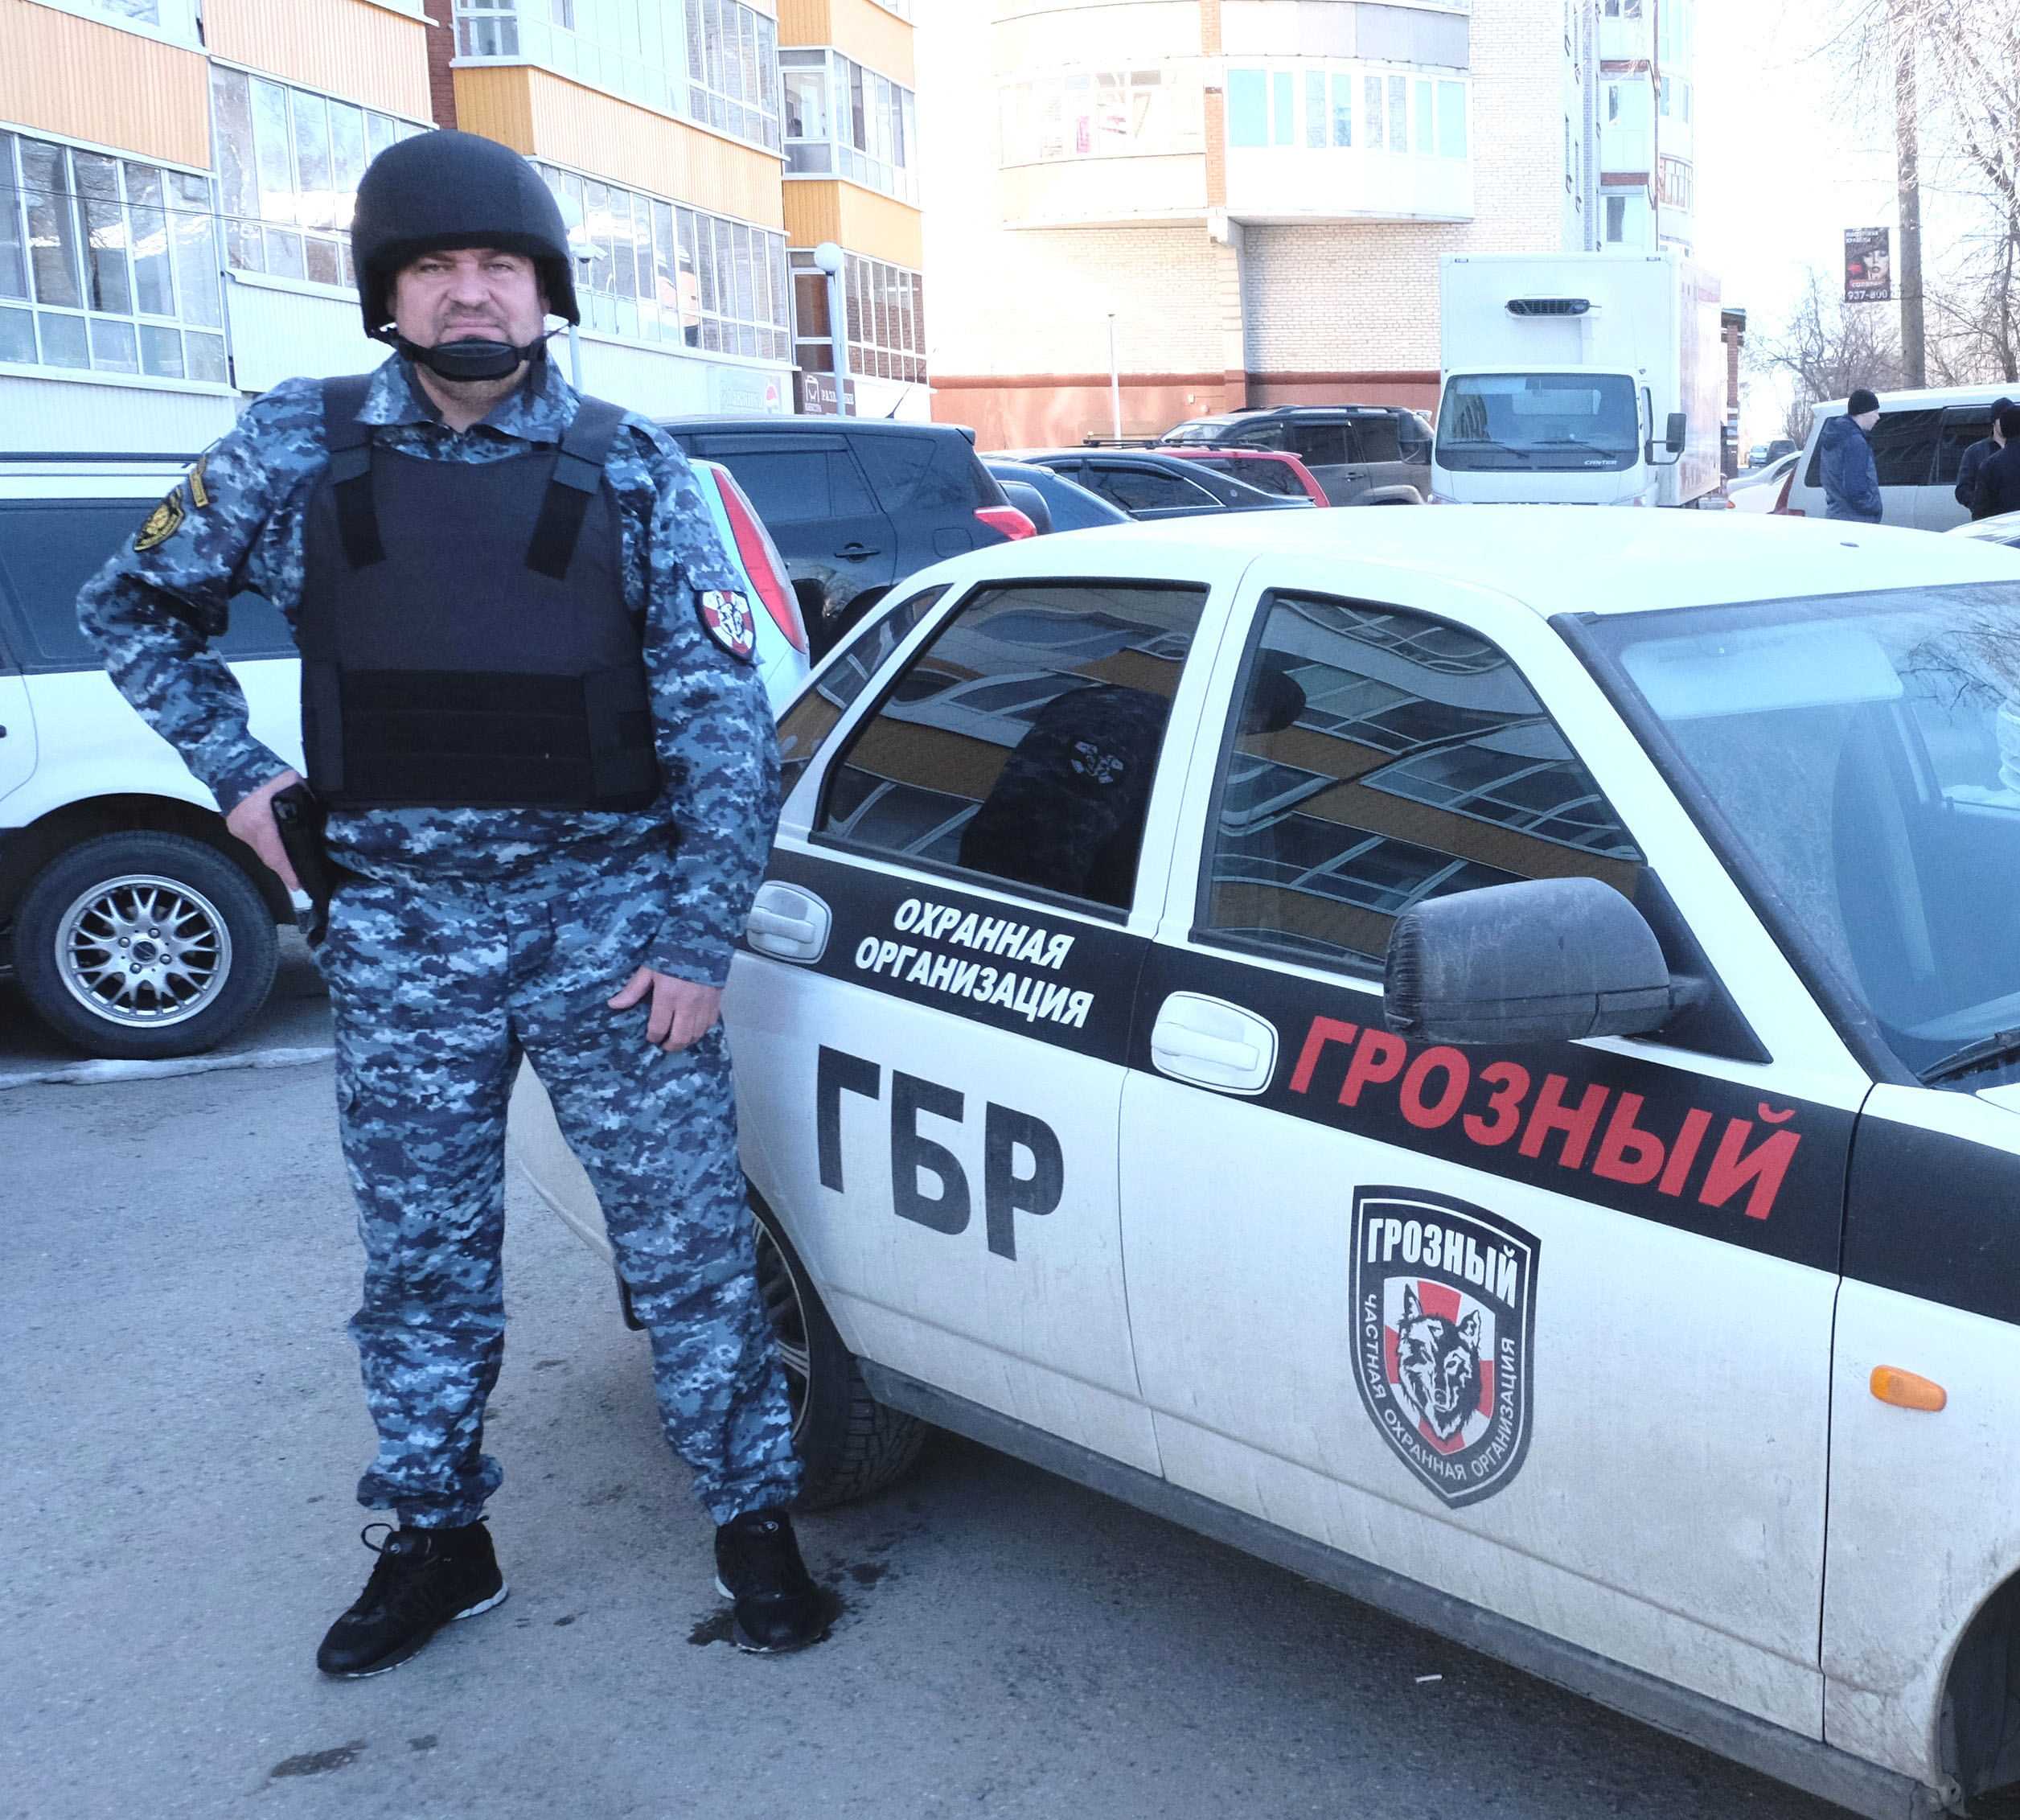 Сотрудник ГБР охранной организации «Грозный» Сергей Попов готов выполнить любое ответственное задание.